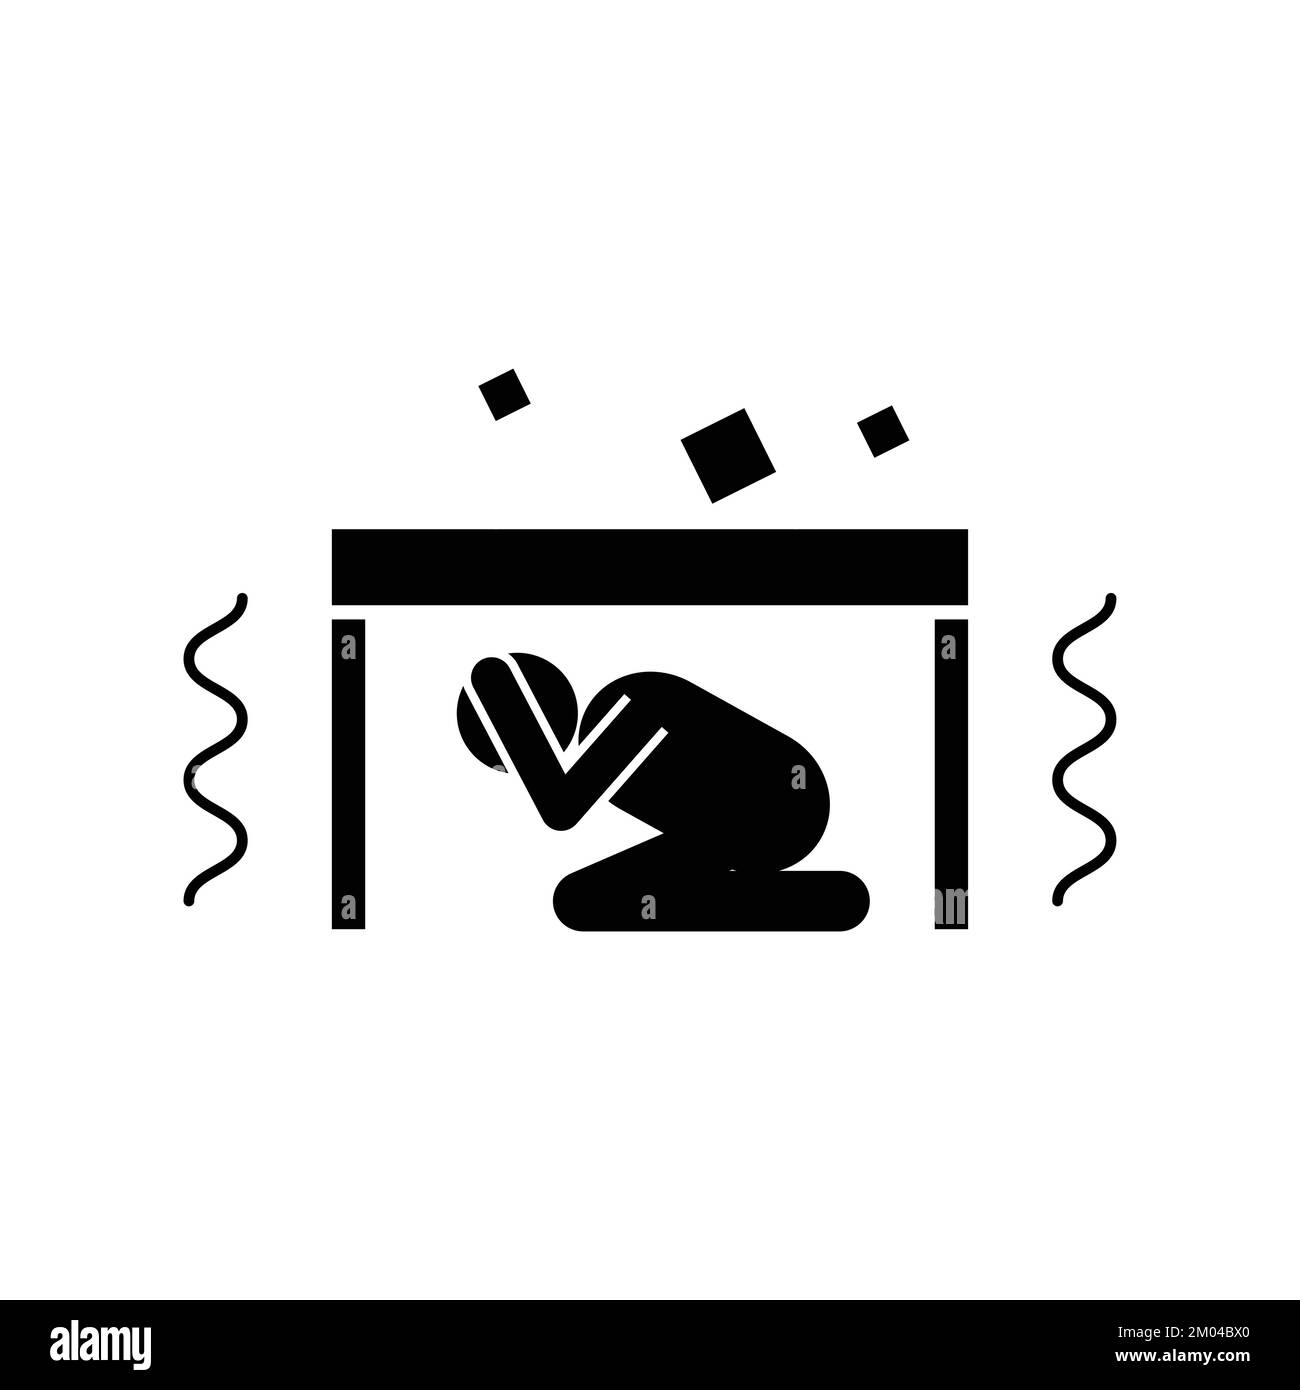 Man hiding under table during earthquake icon vector symbol. Stock Vector